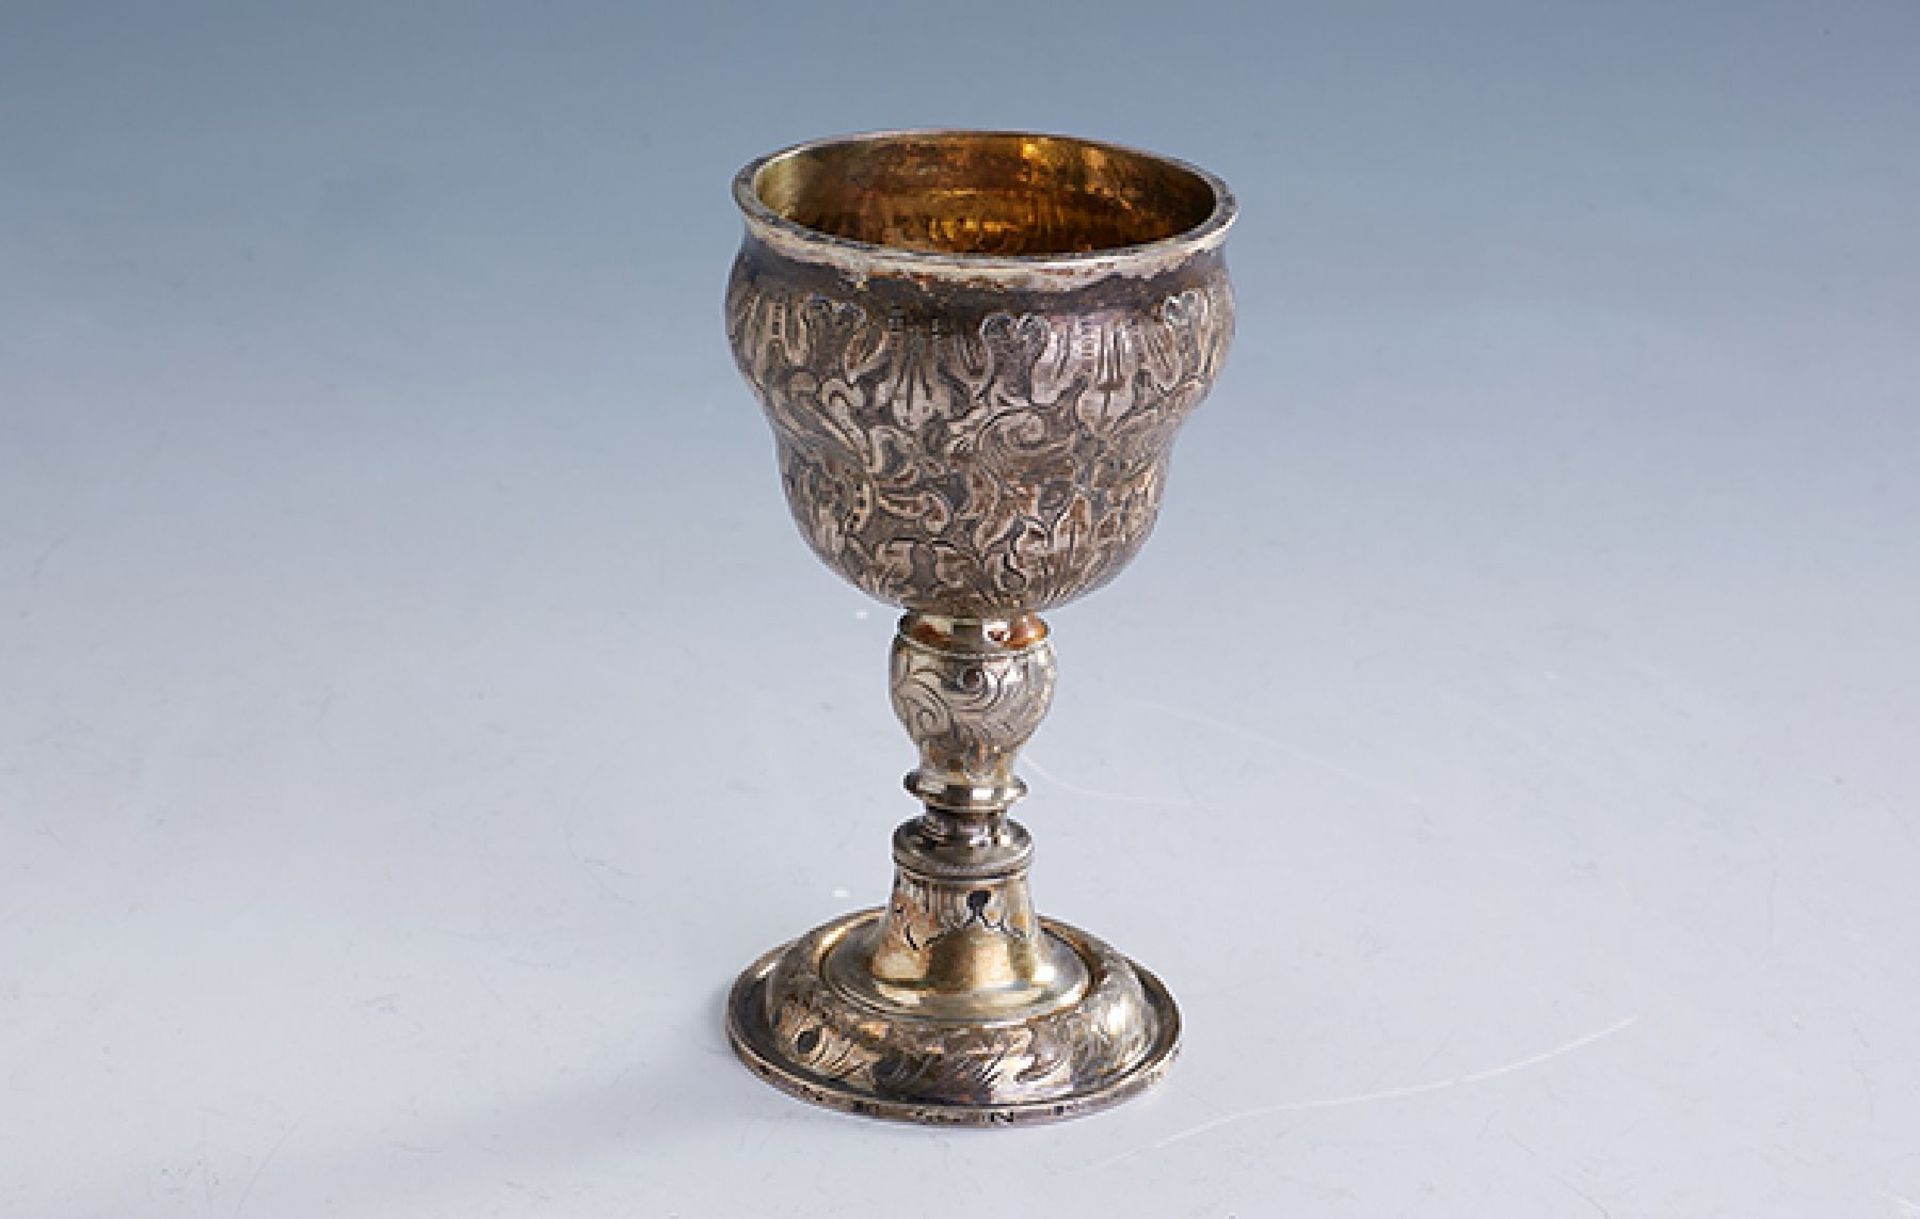 Kleiner Pokal, um 1836, Silber, Korpus wohlälter, dieser mehrfach gebaucht, reiche florale Gravuren,